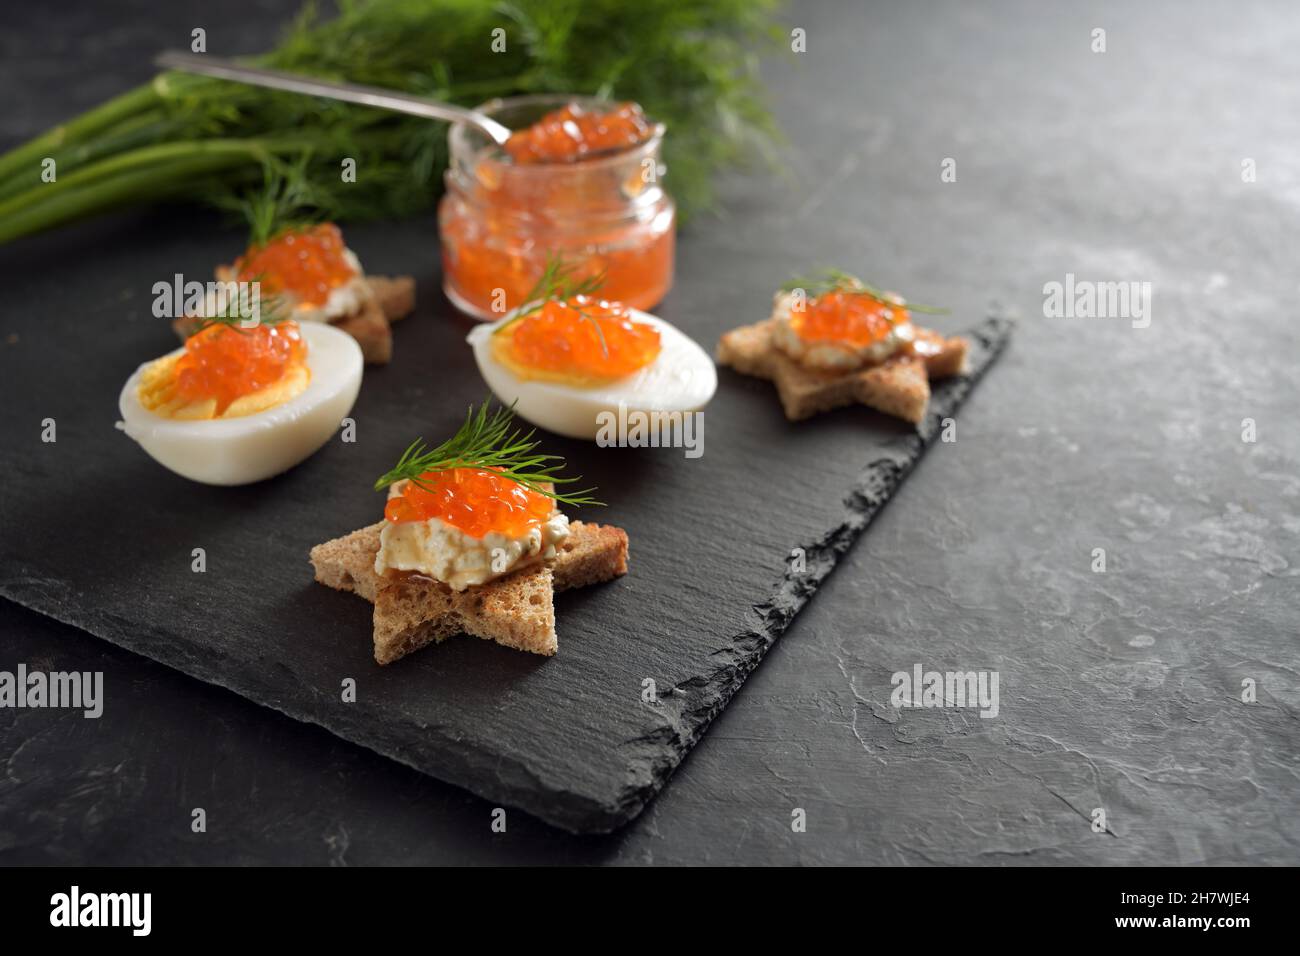 Caviar rojo en huevos a la mitad y en canapés tostados en forma de estrella con eneldo, preparación para un buffet festivo de Navidad en un plato de pizarra oscuro, copia grande Foto de stock